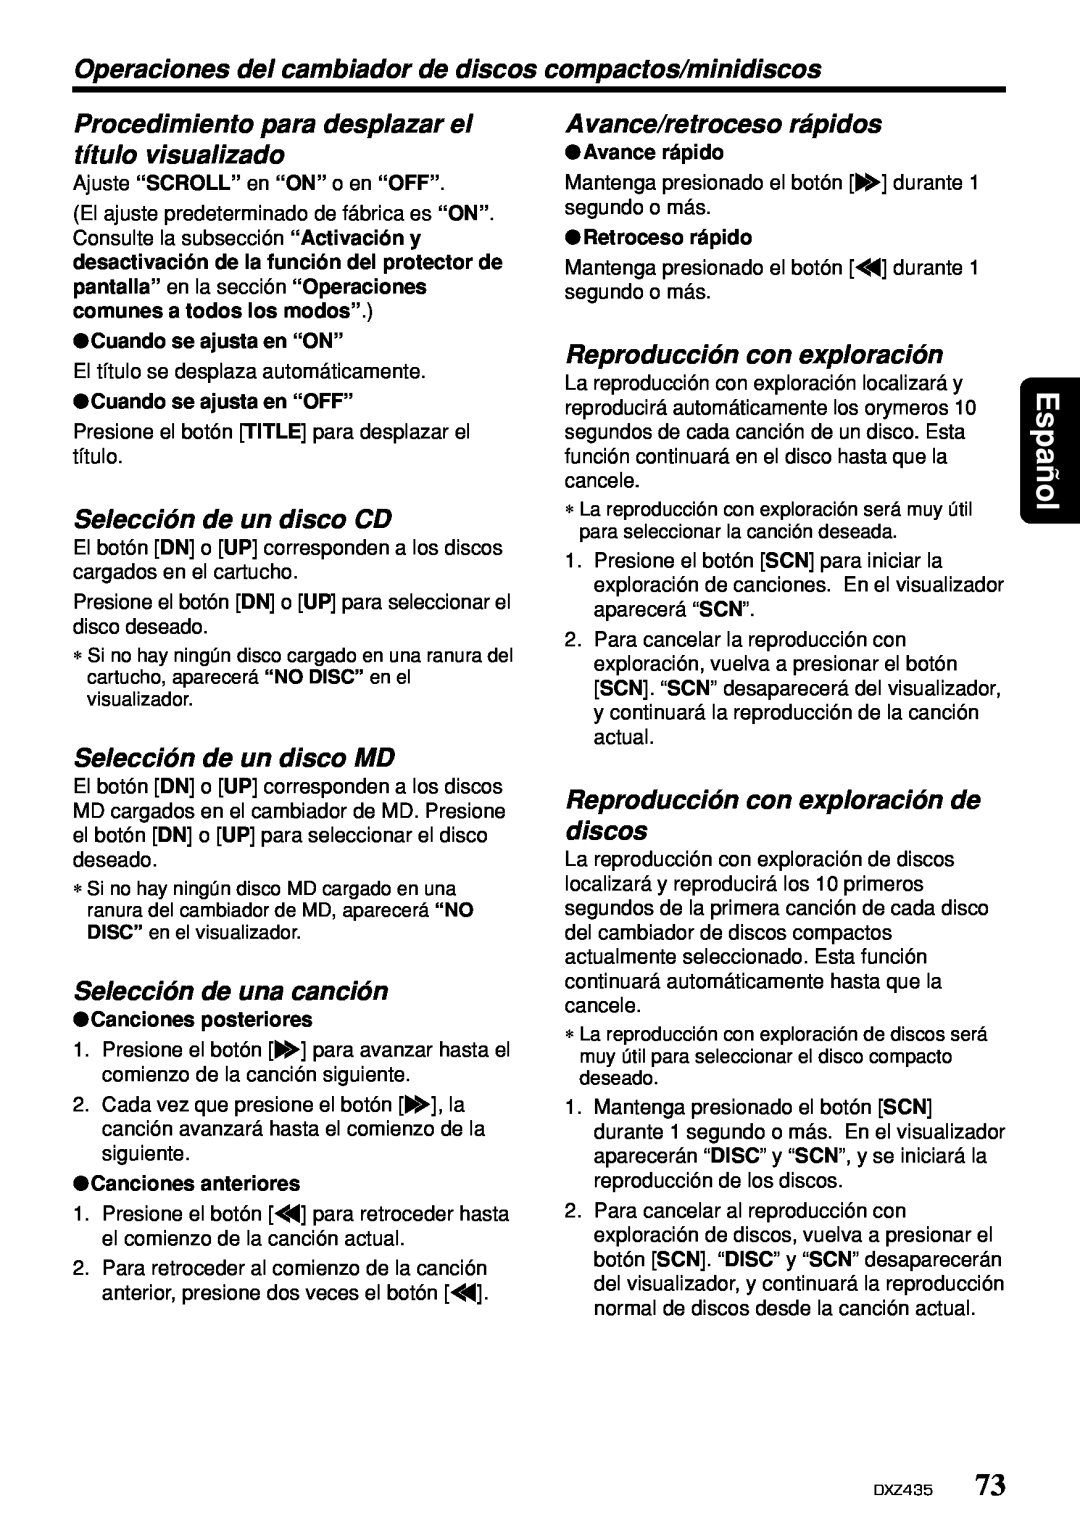 Clarion DXZ435 Selección de un disco CD, Selección de un disco MD, Reproducción con exploración de discos, Español 